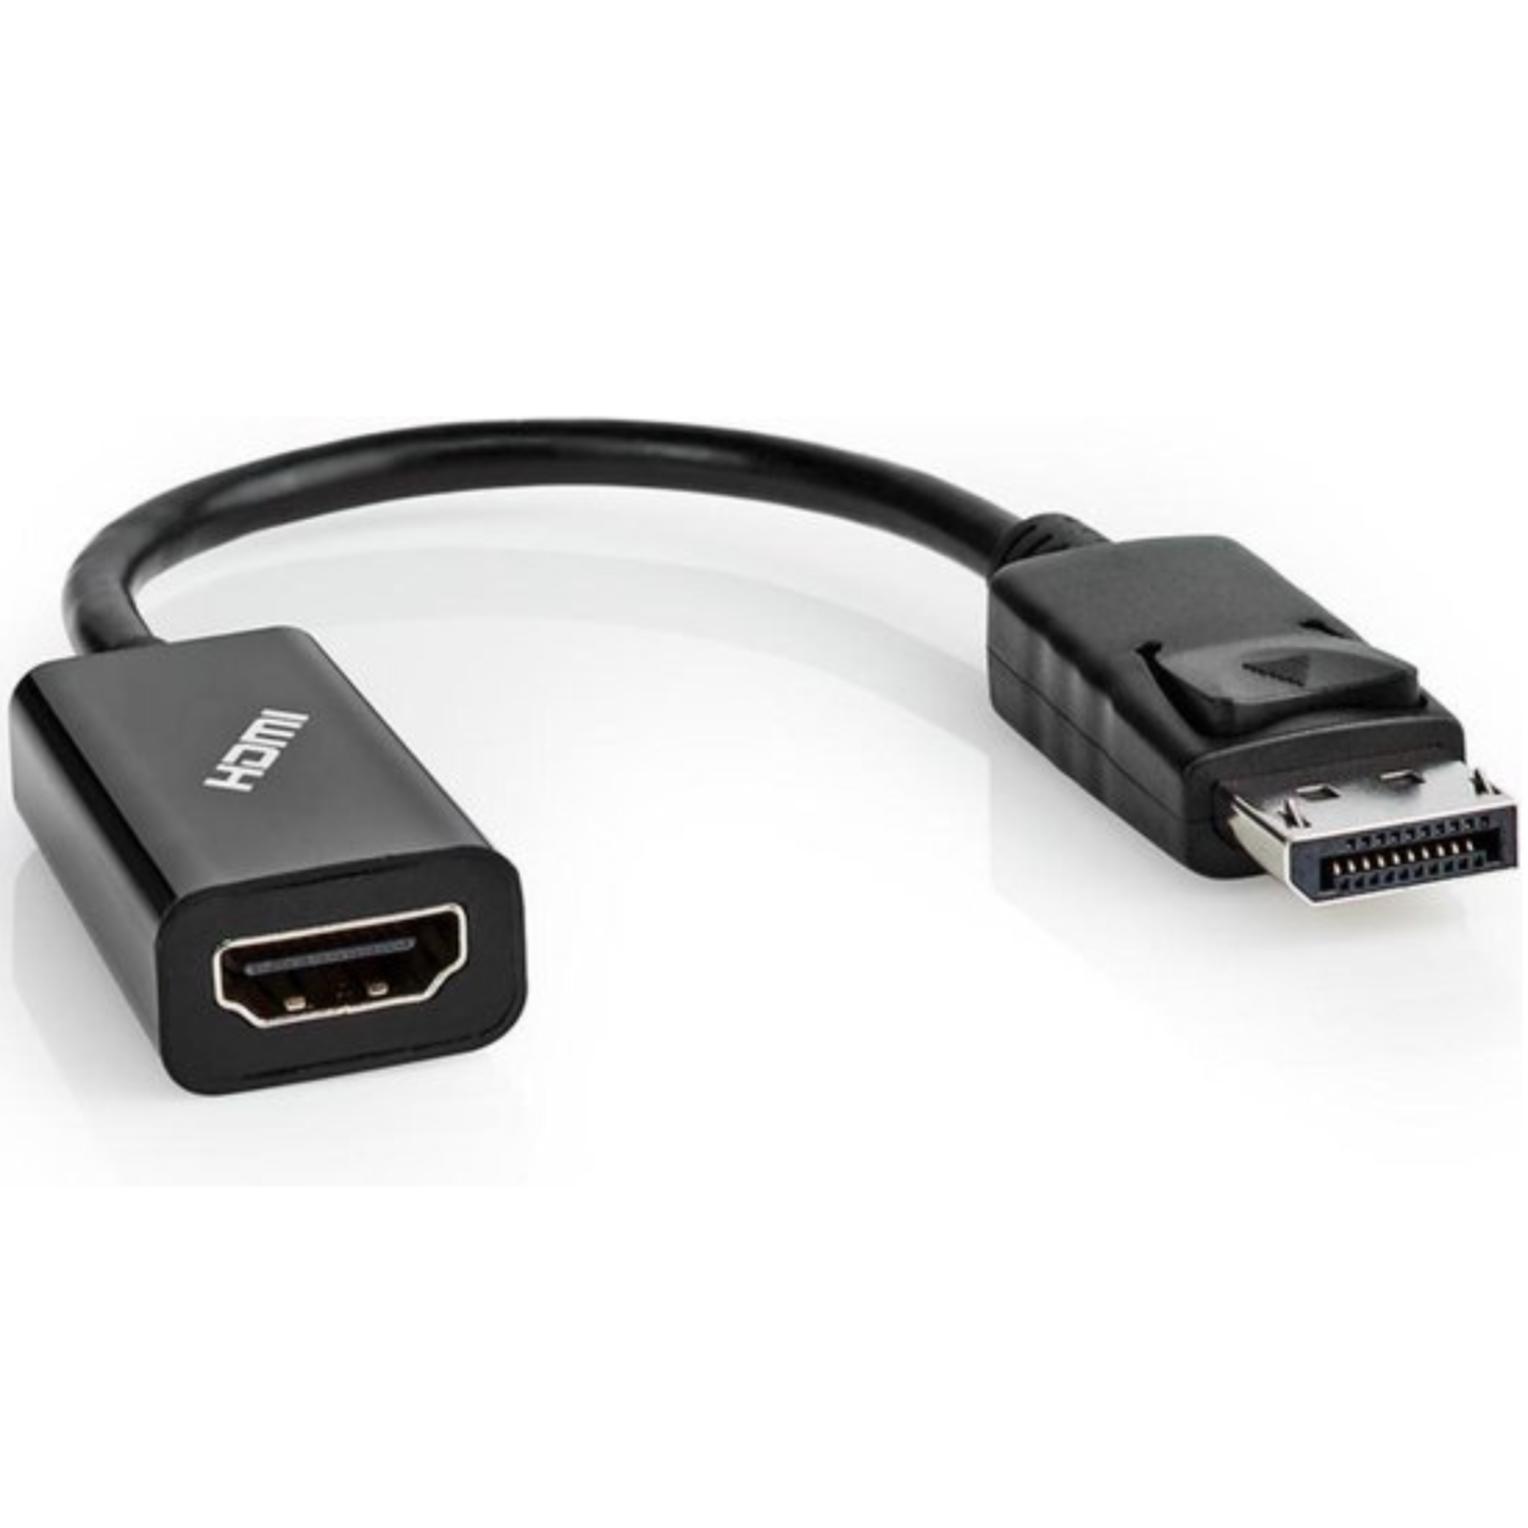 DisplayPort naar HDMI adapter